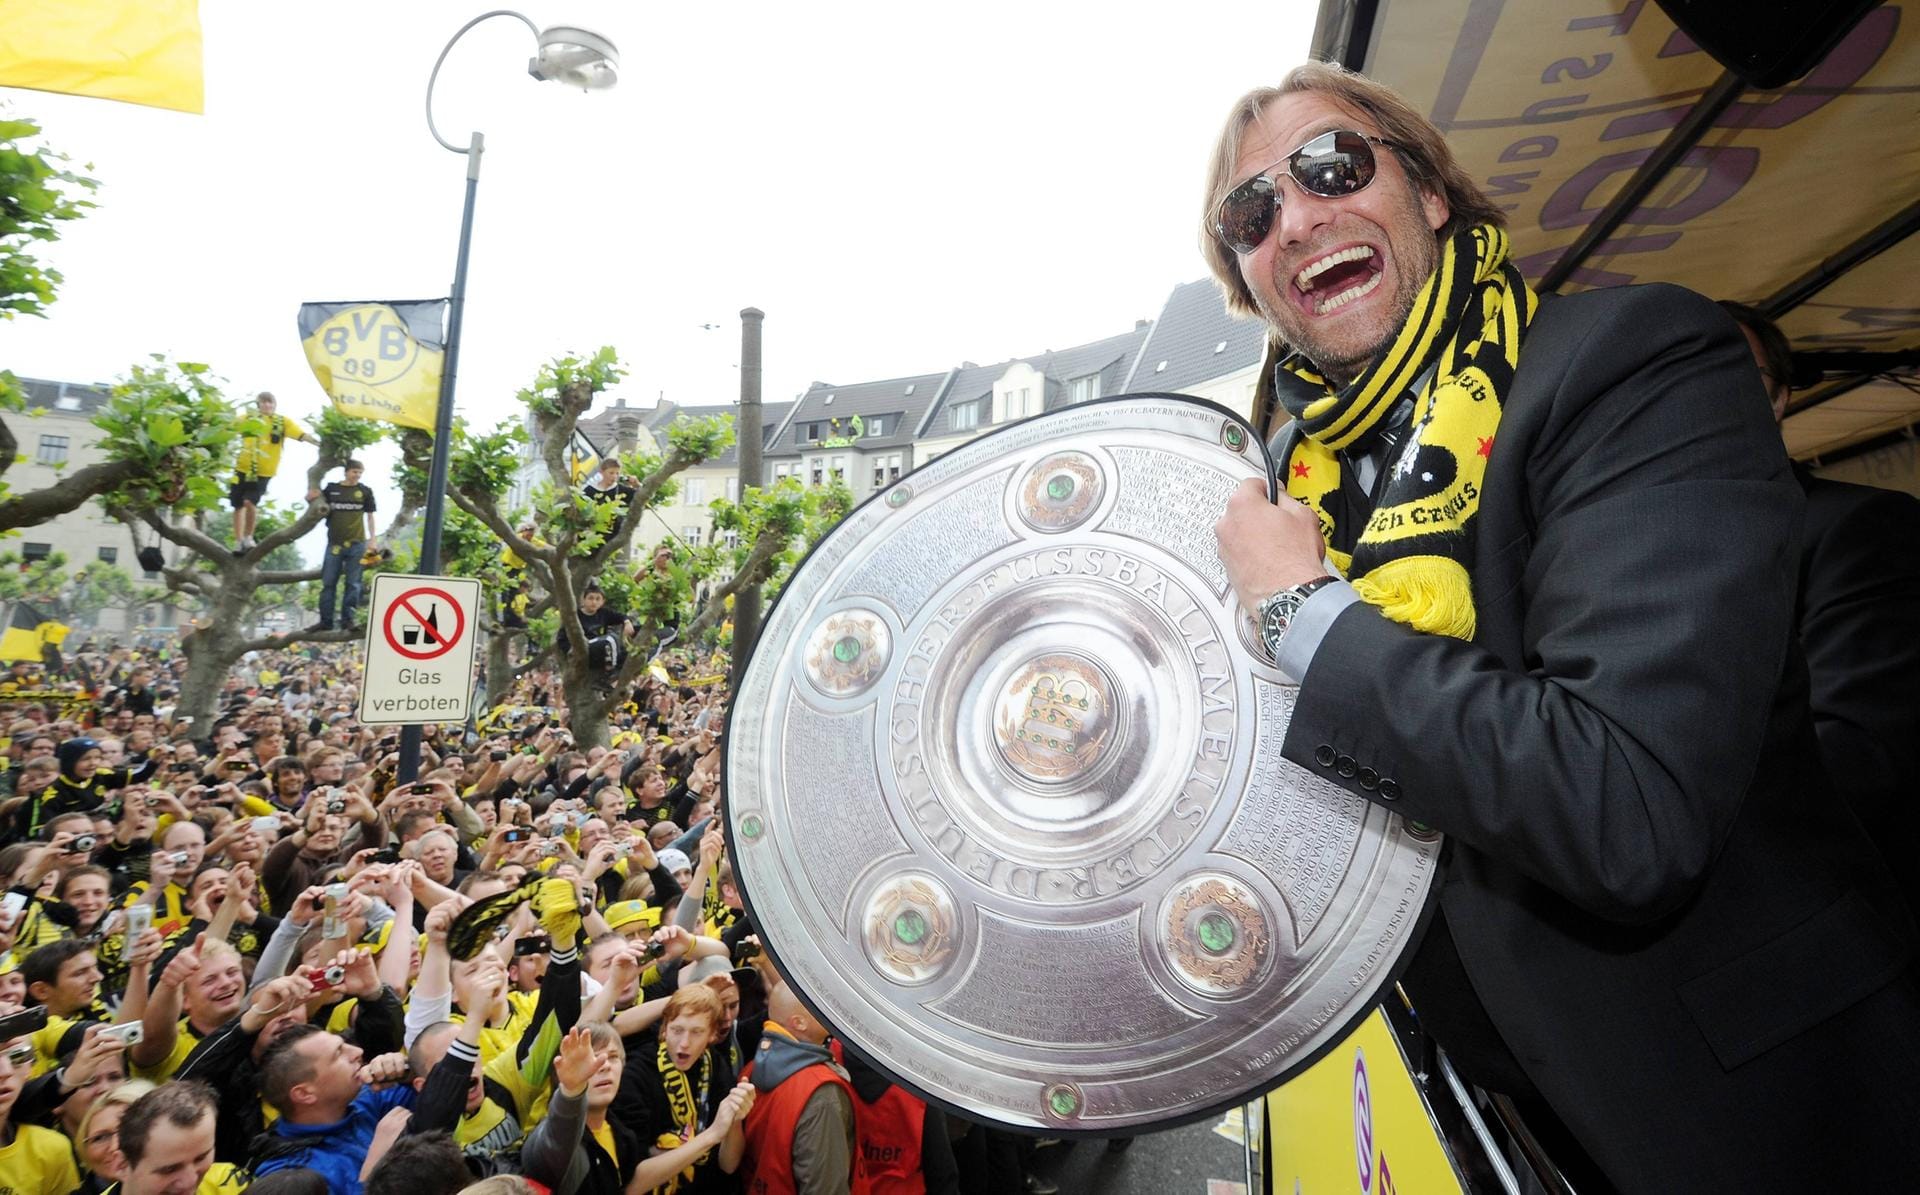 Deutscher Meister 2011: Drei Jahre nach seinem Amtsantritt feiert Klopp seinen ersten großen Titel. Mit Borussia Dortmund wird er Meister. Die BVB-Fans liegen ihm zu Füßen.